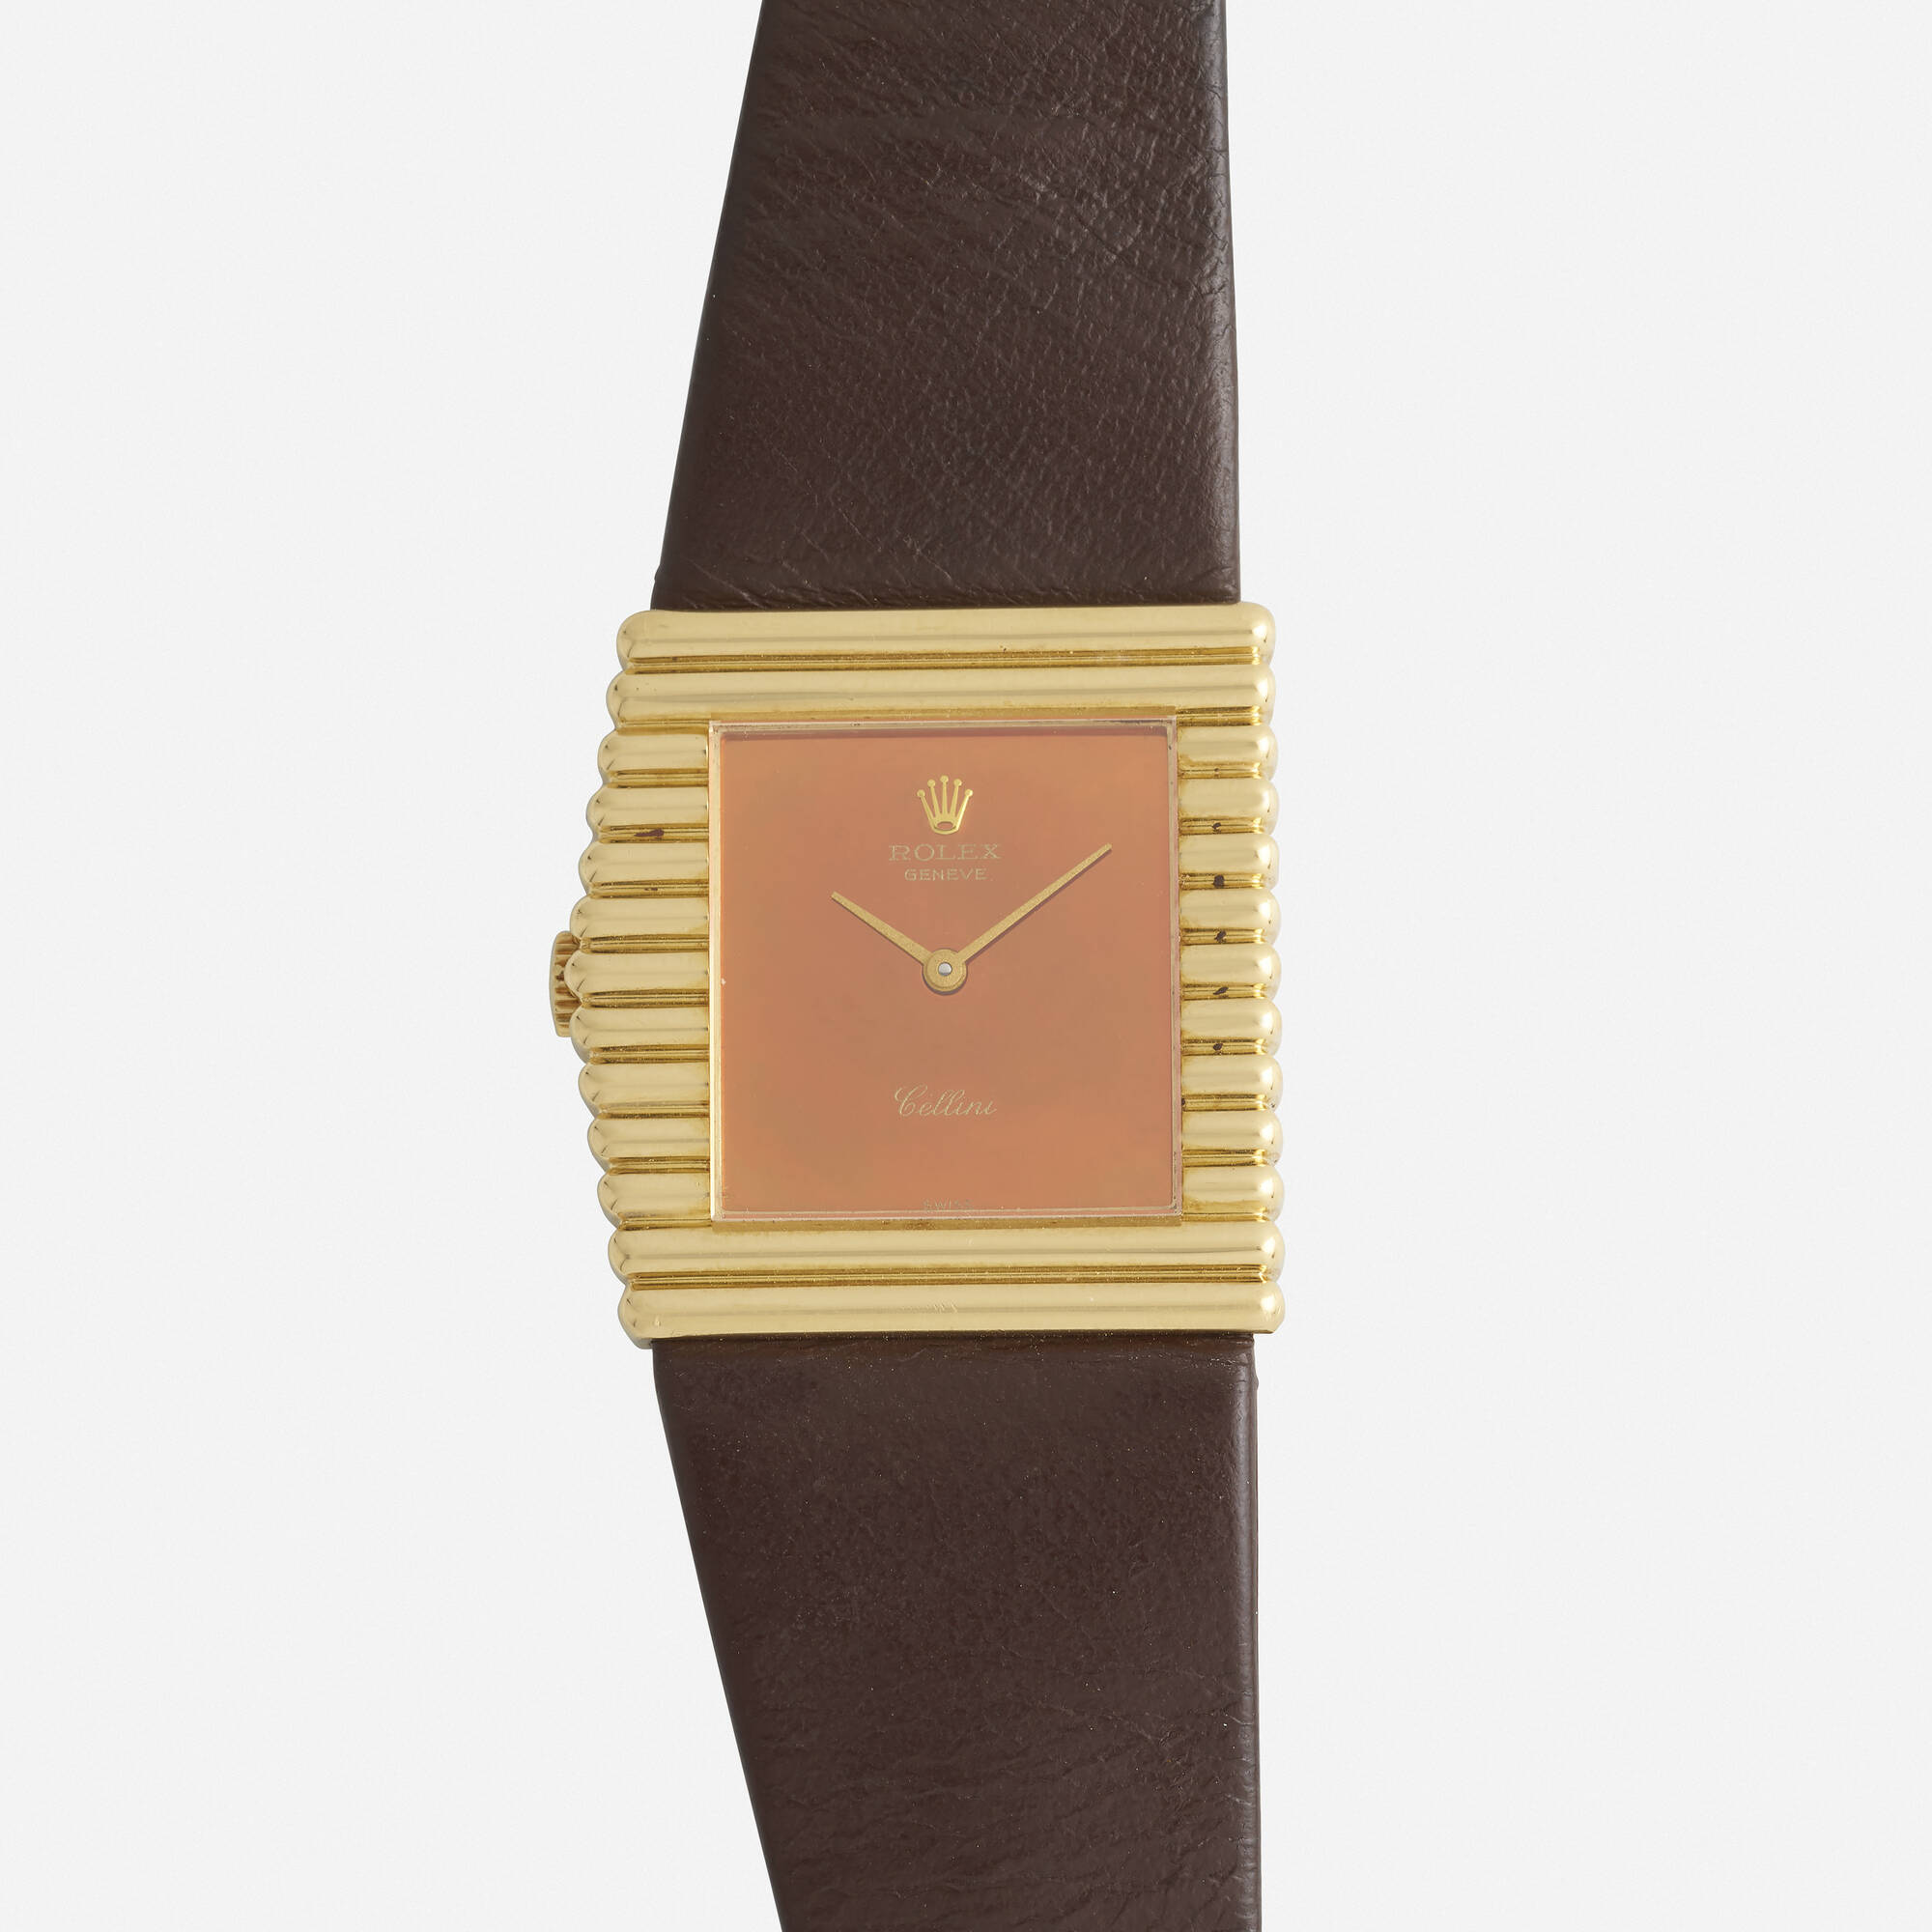 128: ROLEX, 'Cellini King Midas' gold wristwatch, Ref. 4015 